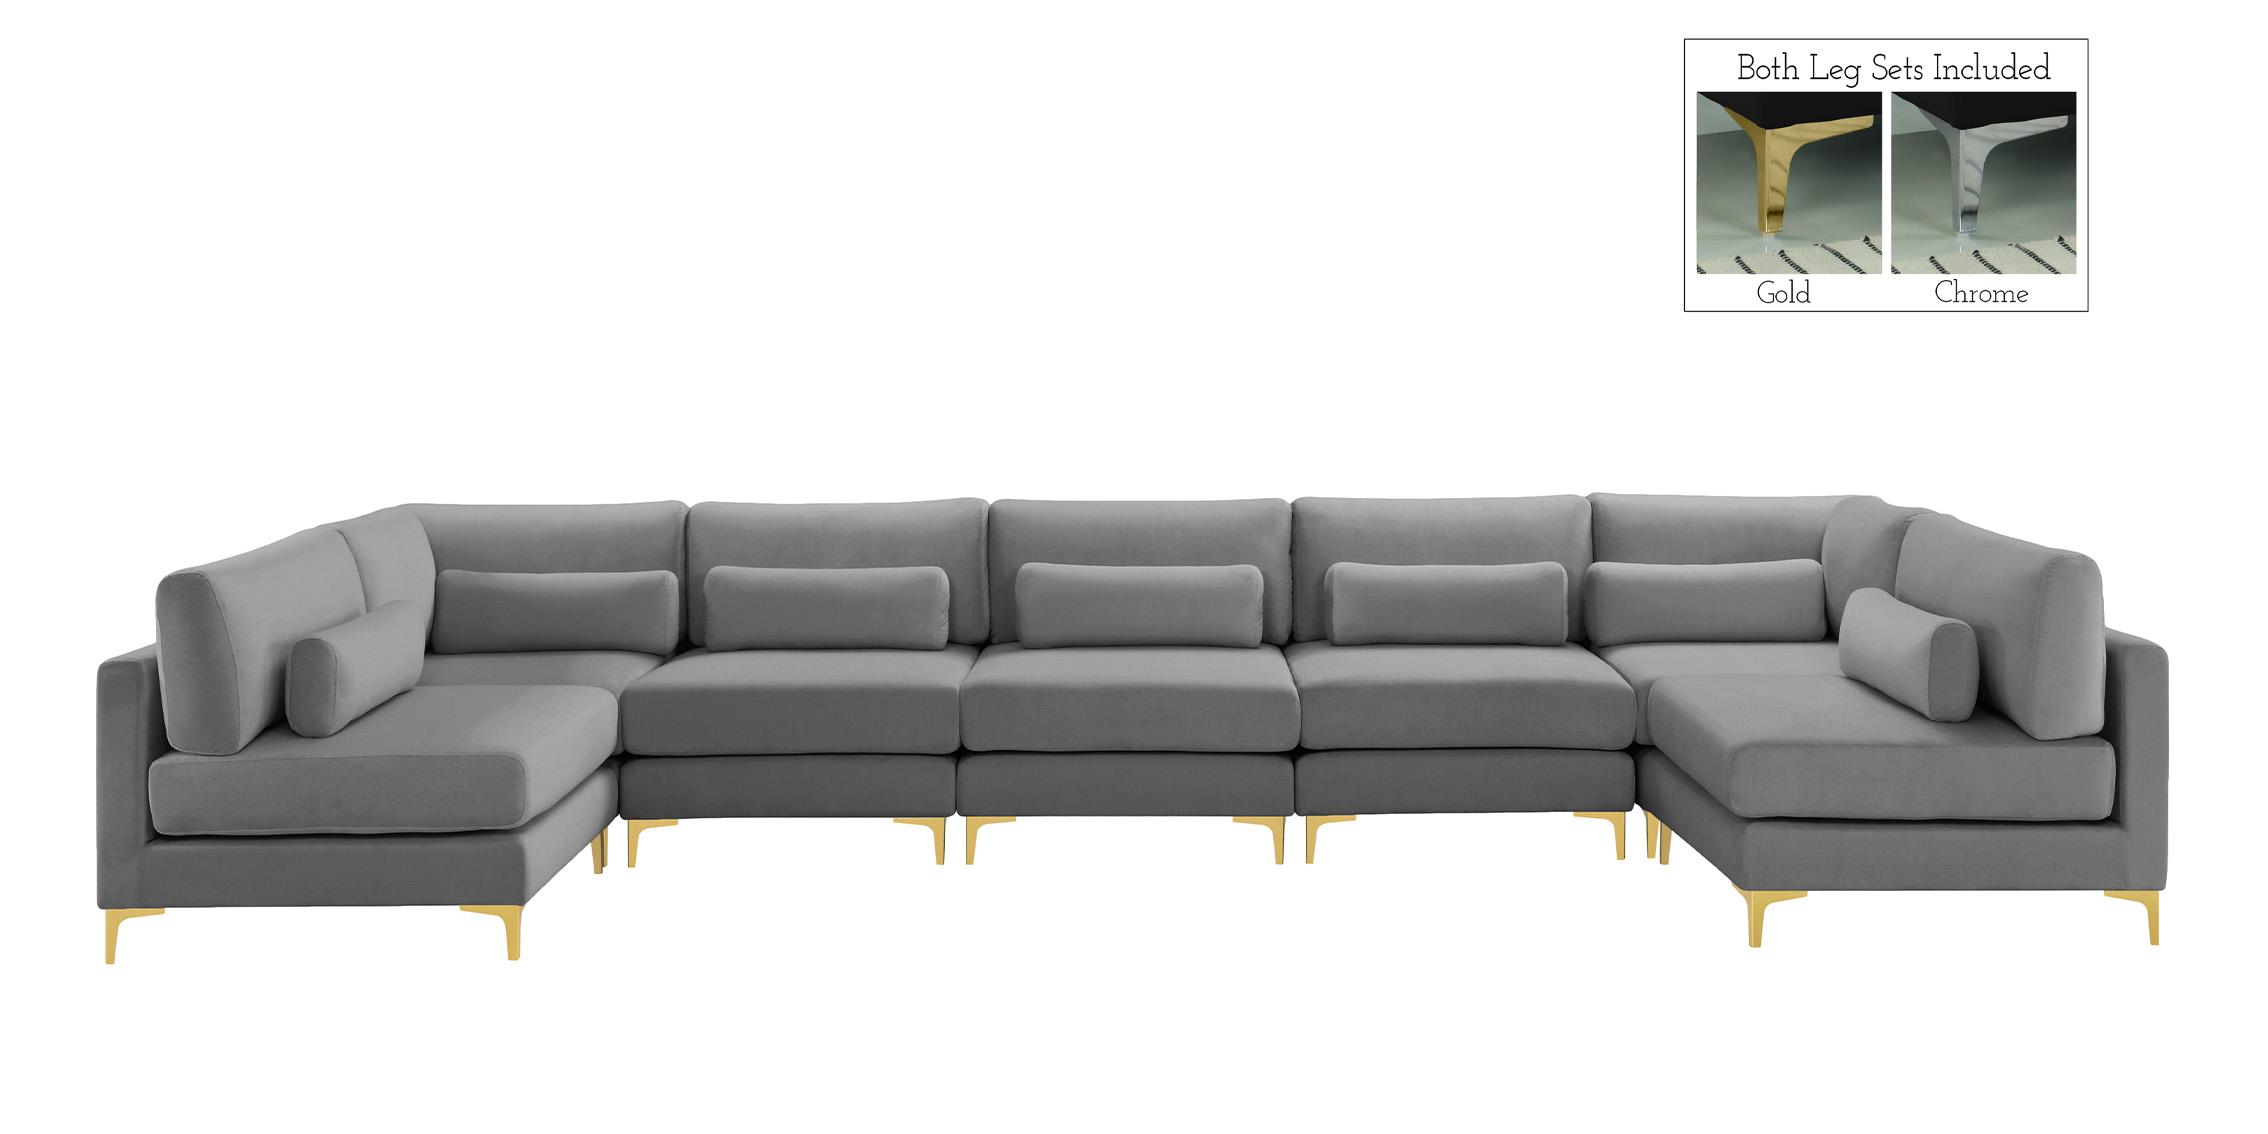 

    
Meridian Furniture JULIA 605Grey-Sec7B Modular Sectional Sofa Gray 605Grey-Sec7B
